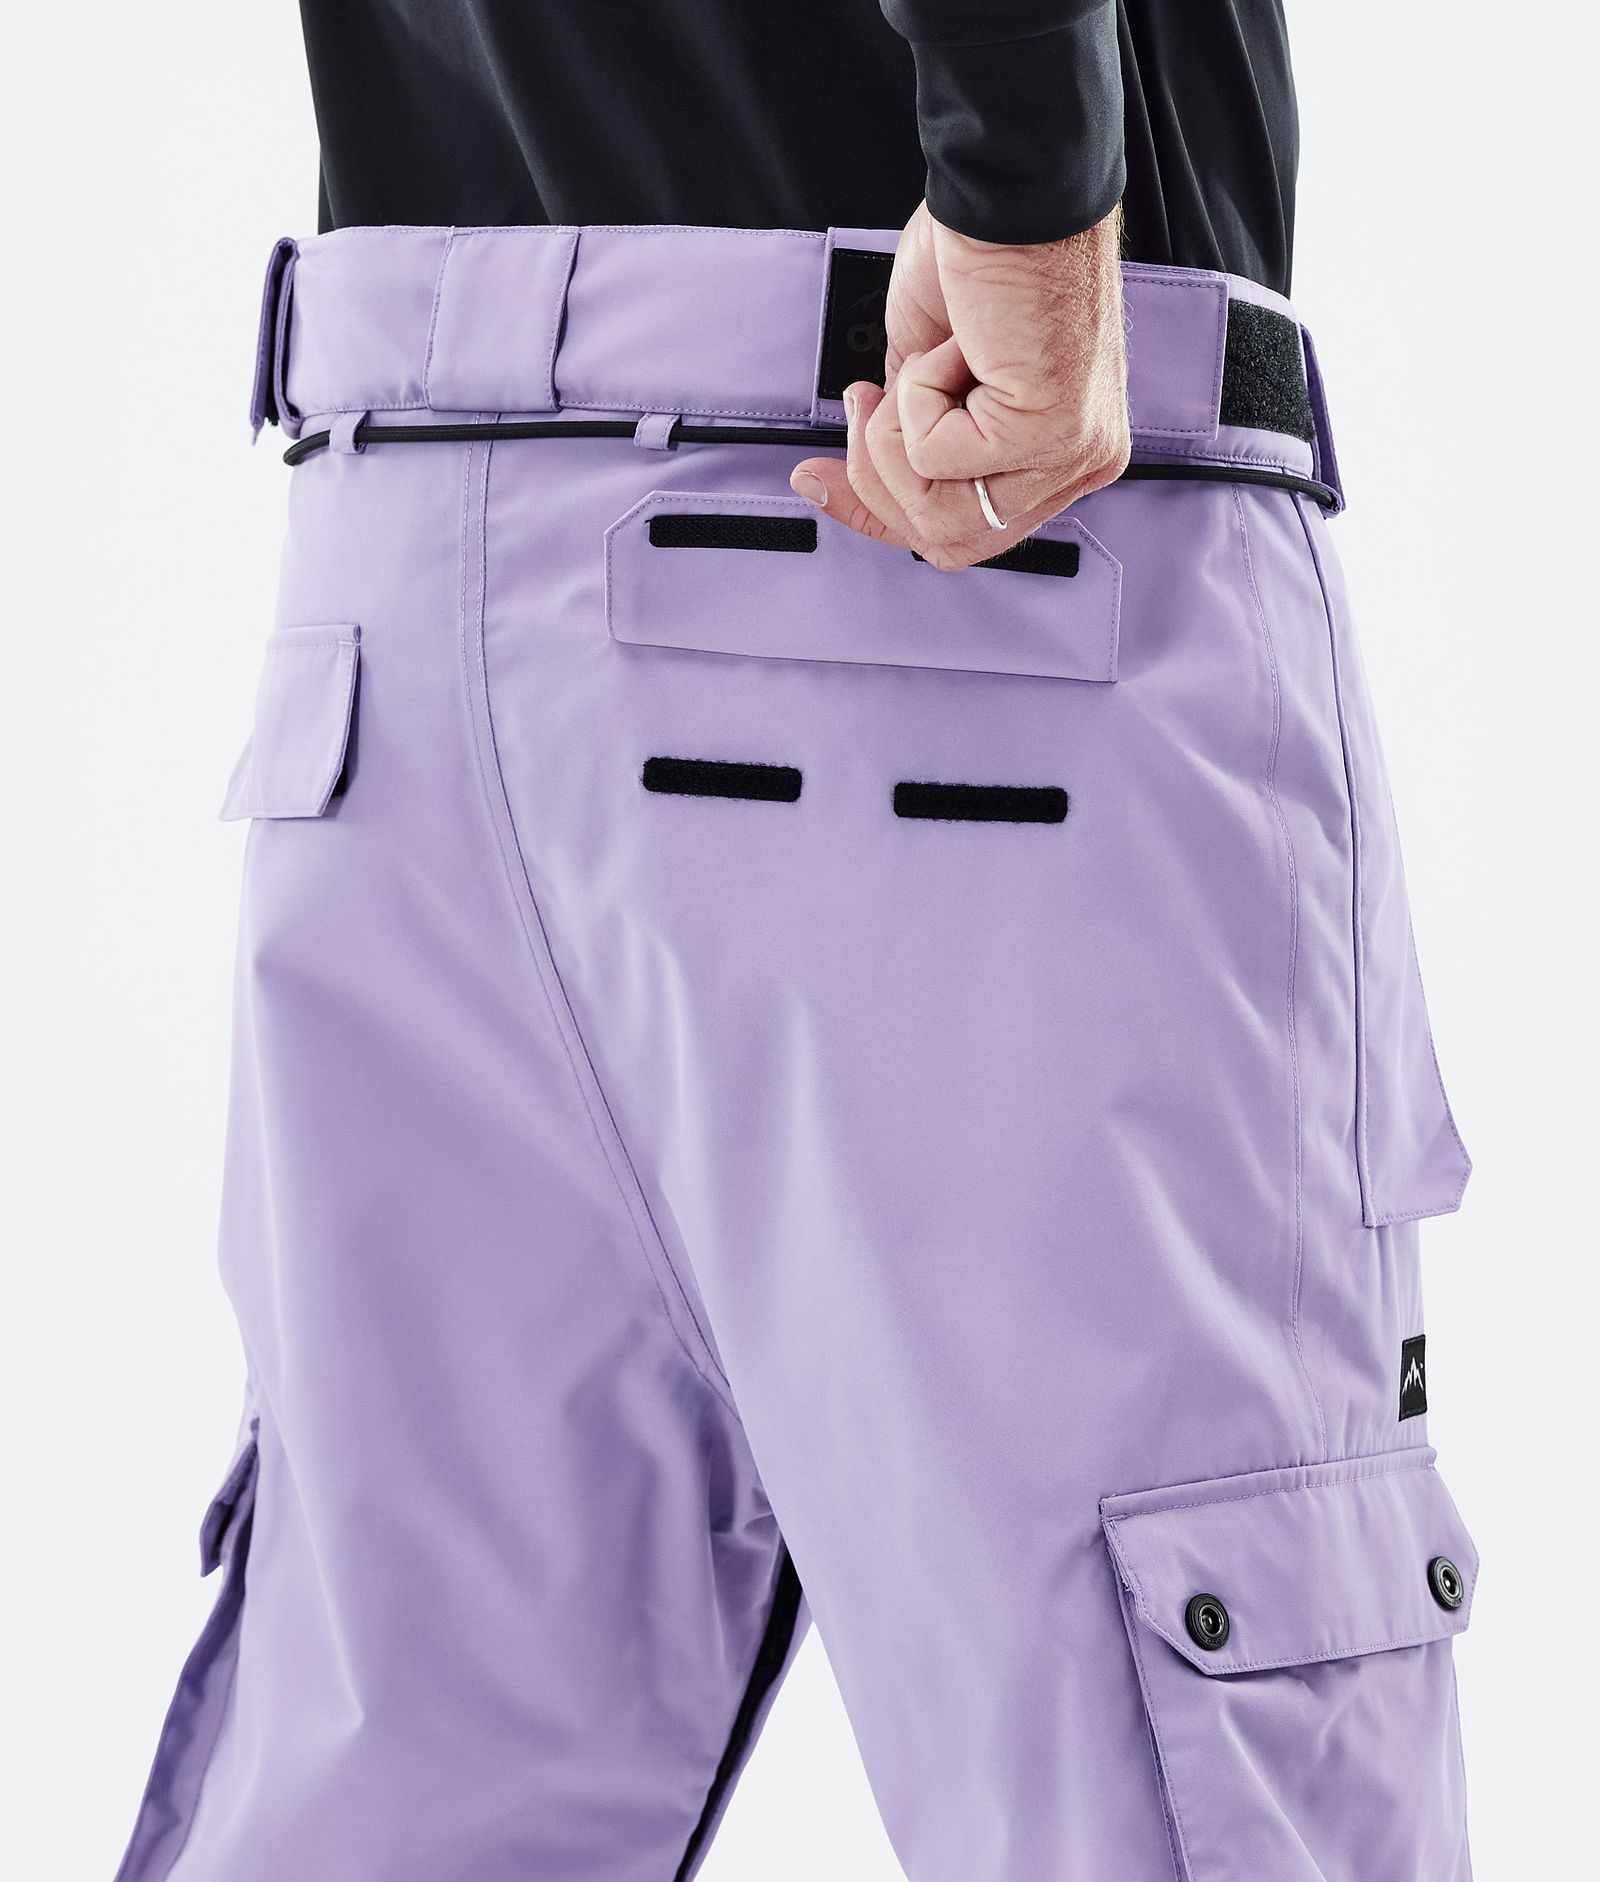 Iconic Pantalon de Ski Homme Faded Violet